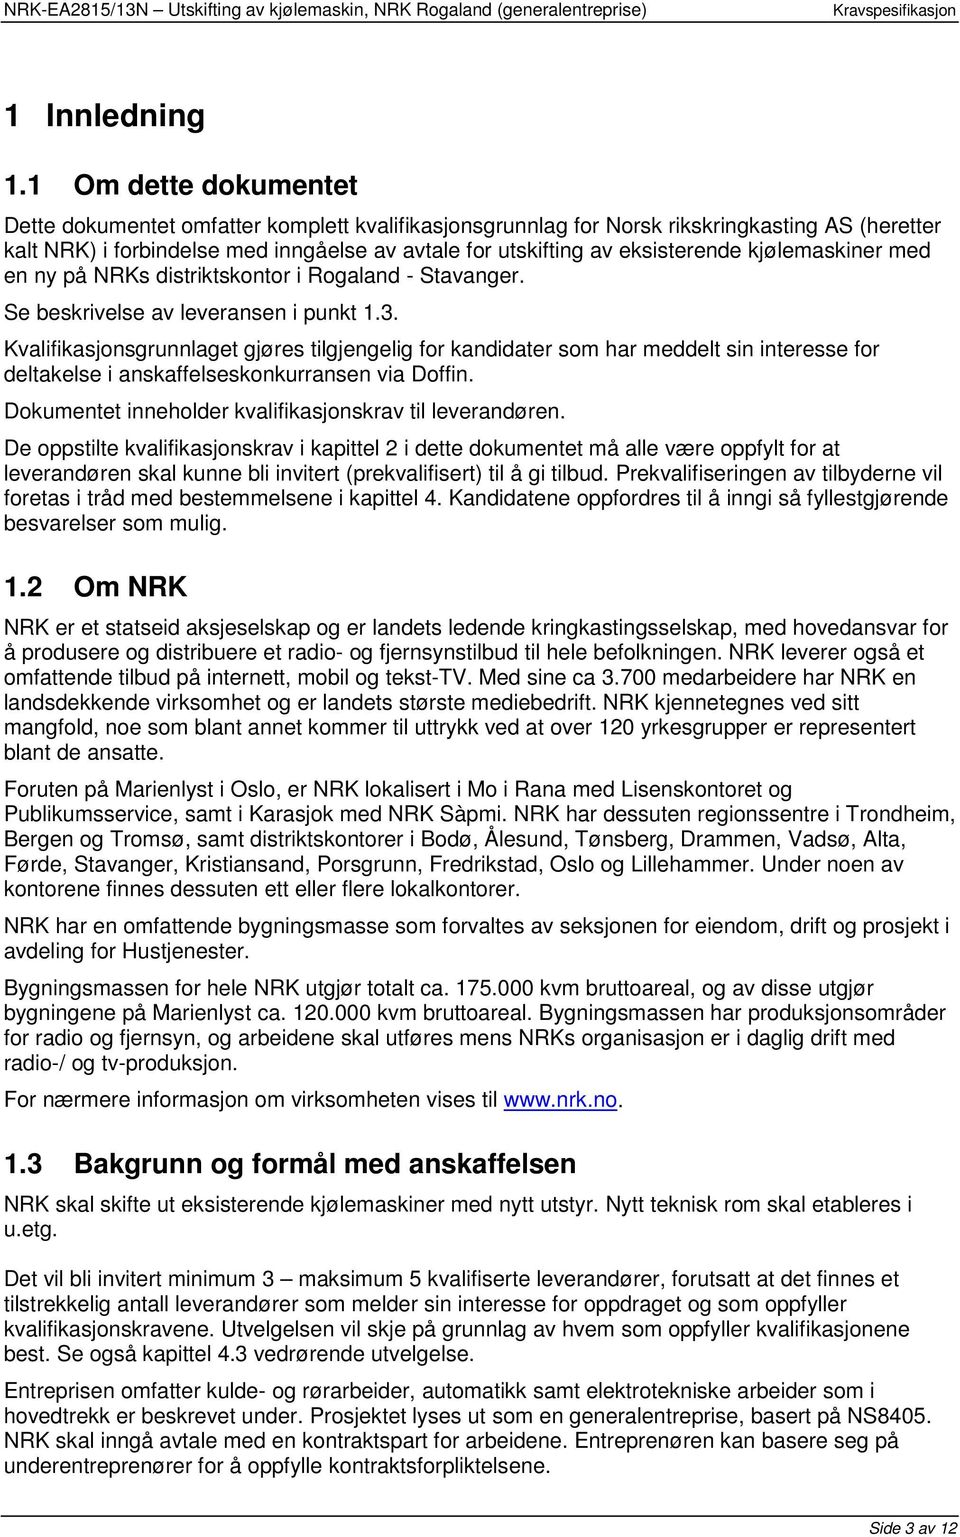 kjølemaskiner med en ny på NRKs distriktskontor i Rogaland - Stavanger. Se beskrivelse av leveransen i punkt 1.3.